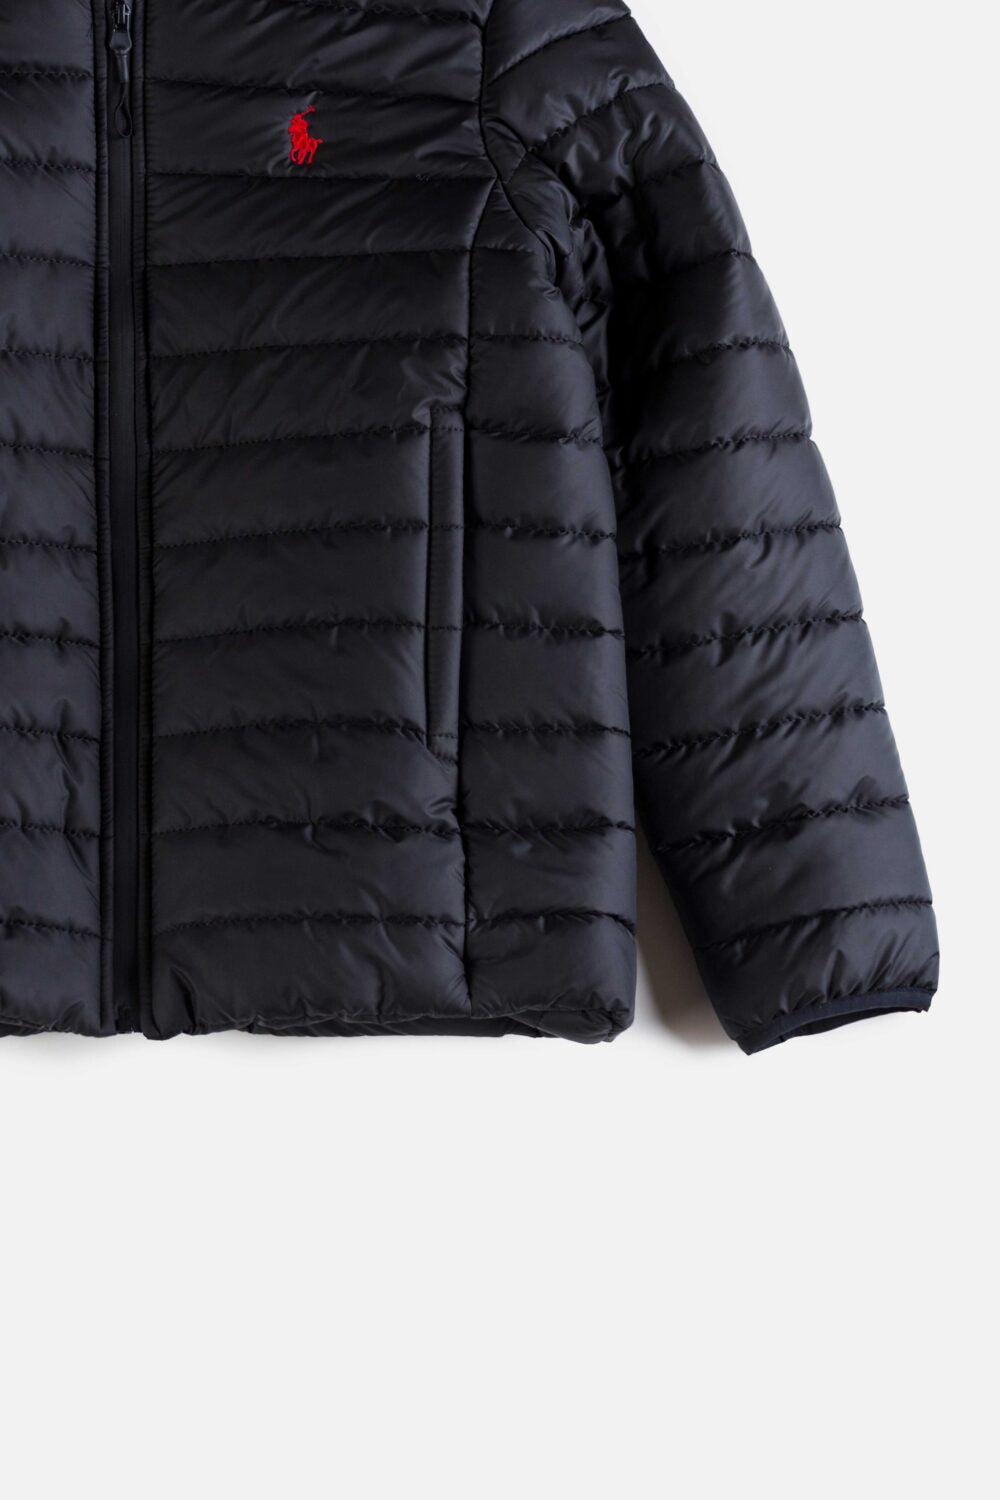 RL Premium Puffer Jacket – Black